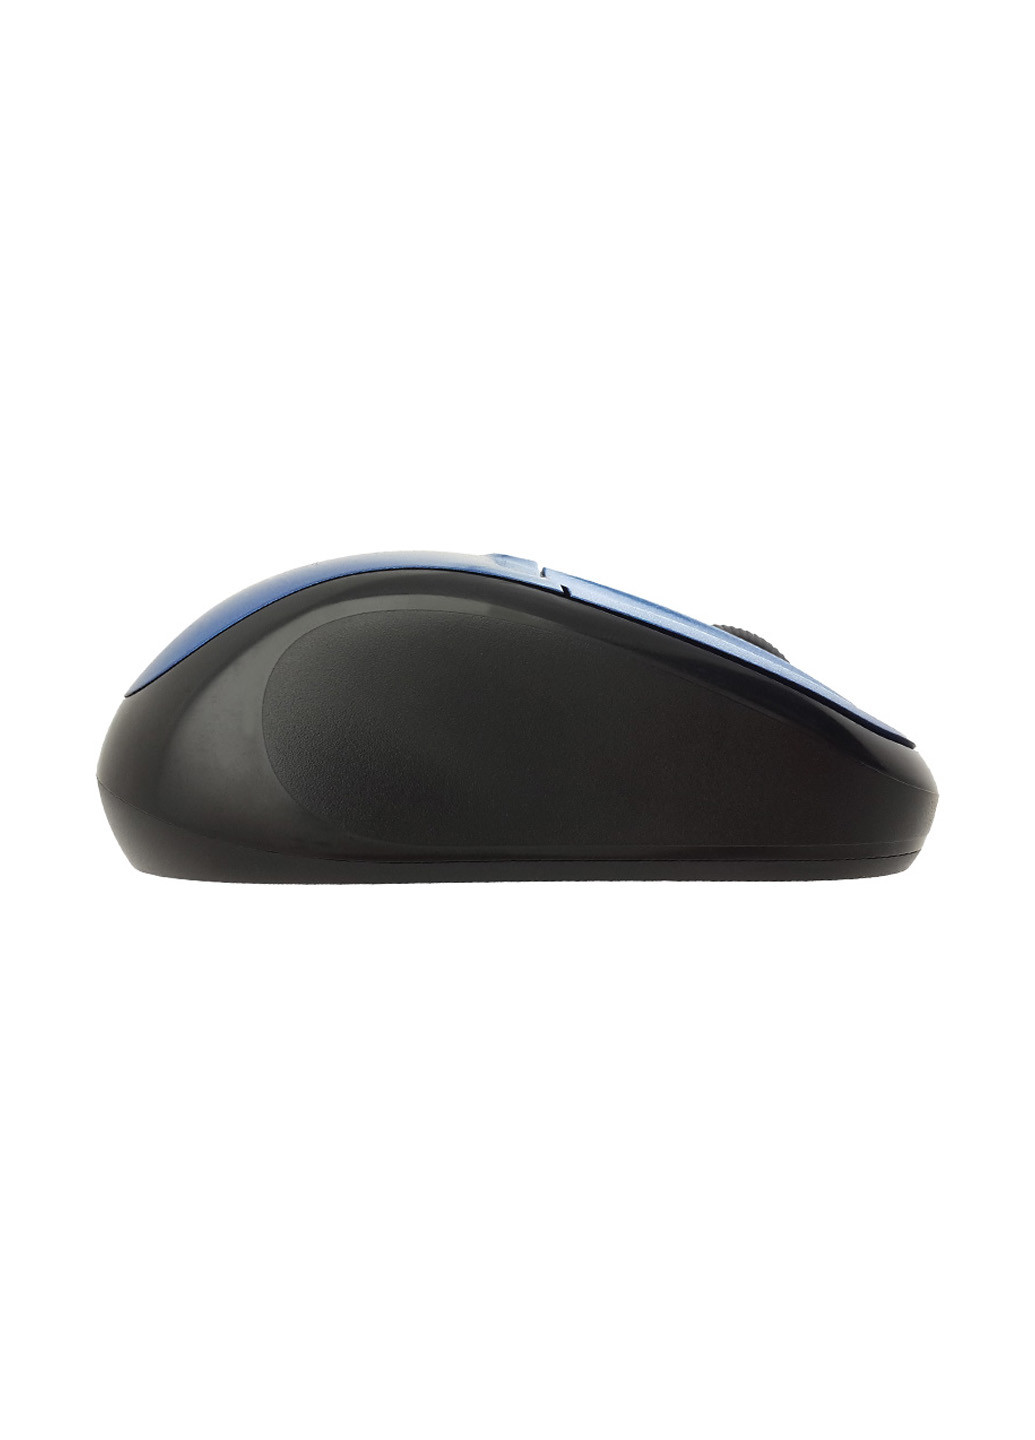 Миша оптична безпровідна (синій) Piko msx-050 (130789608)